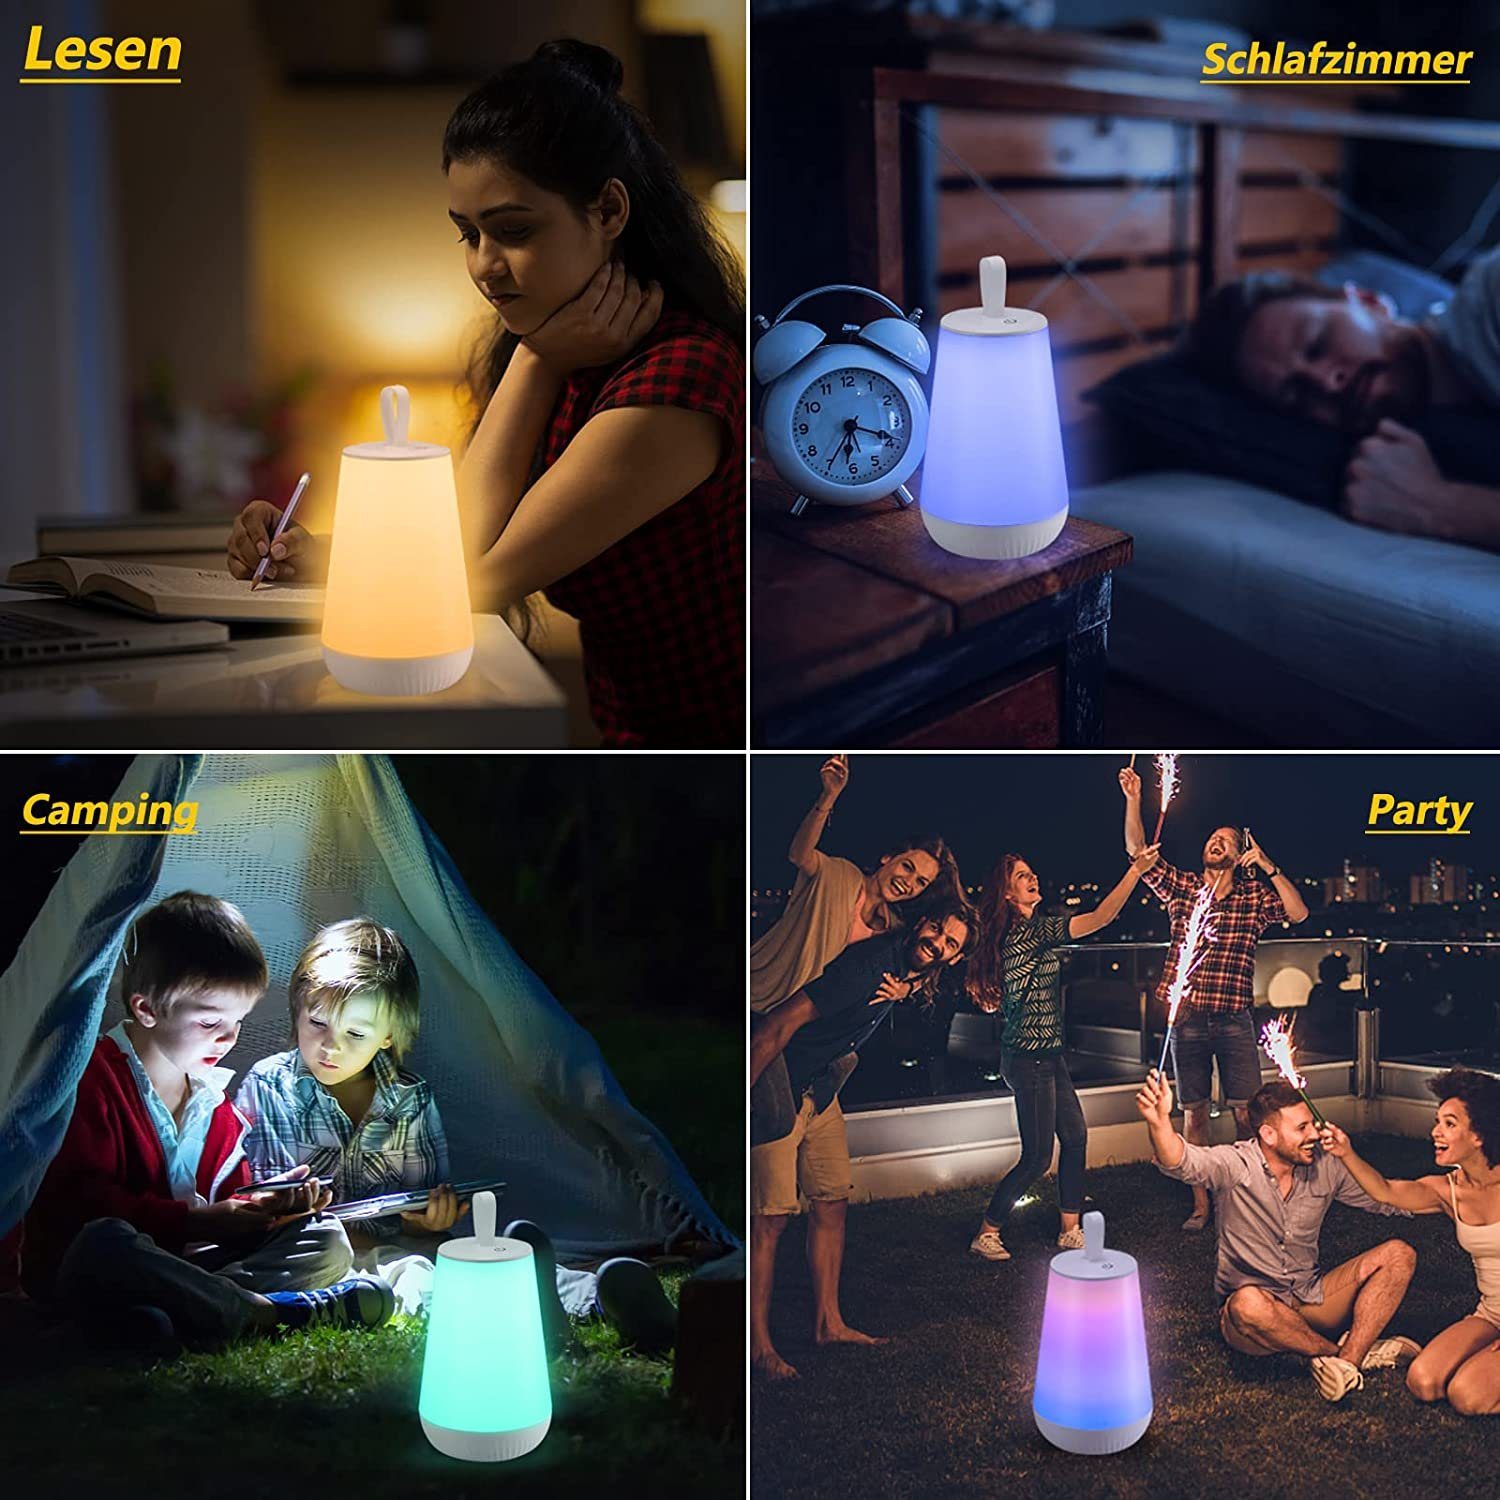 Modi LED Bunte für Nachttischlampe 3 integriert, fest 15 Nachttischlampe autolock Farben LED LED Lampe, Dimmbar,Tragbare Touch LED Fernbedienung, Kinder,Baby,Schlafzimmer,Wohnzimmer,Camping ohne